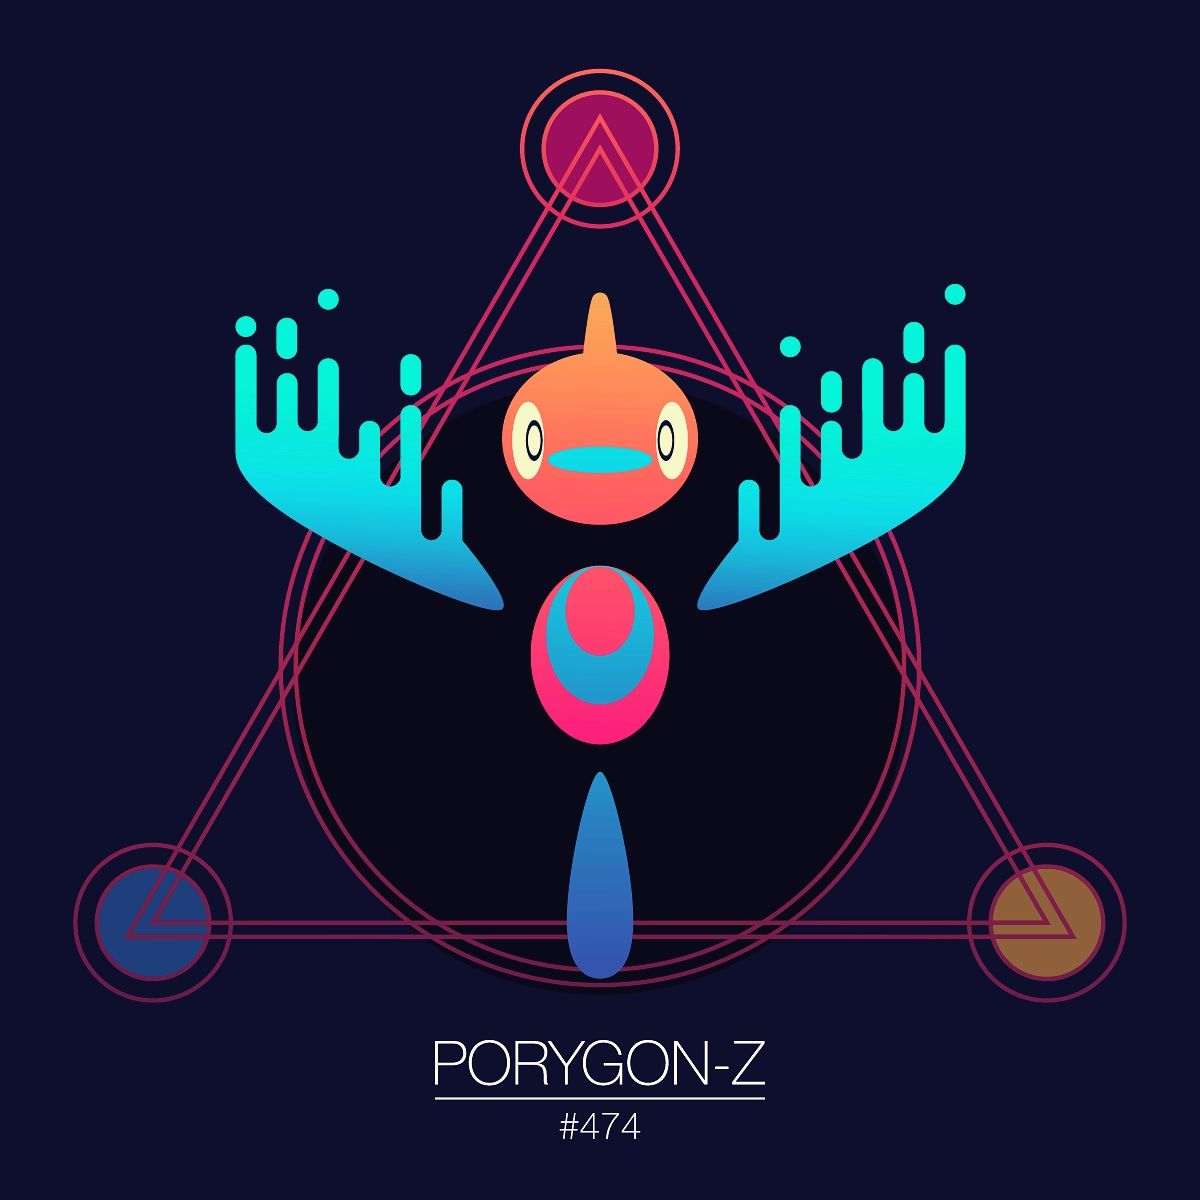 Porygon-Z Hd Wallpapers